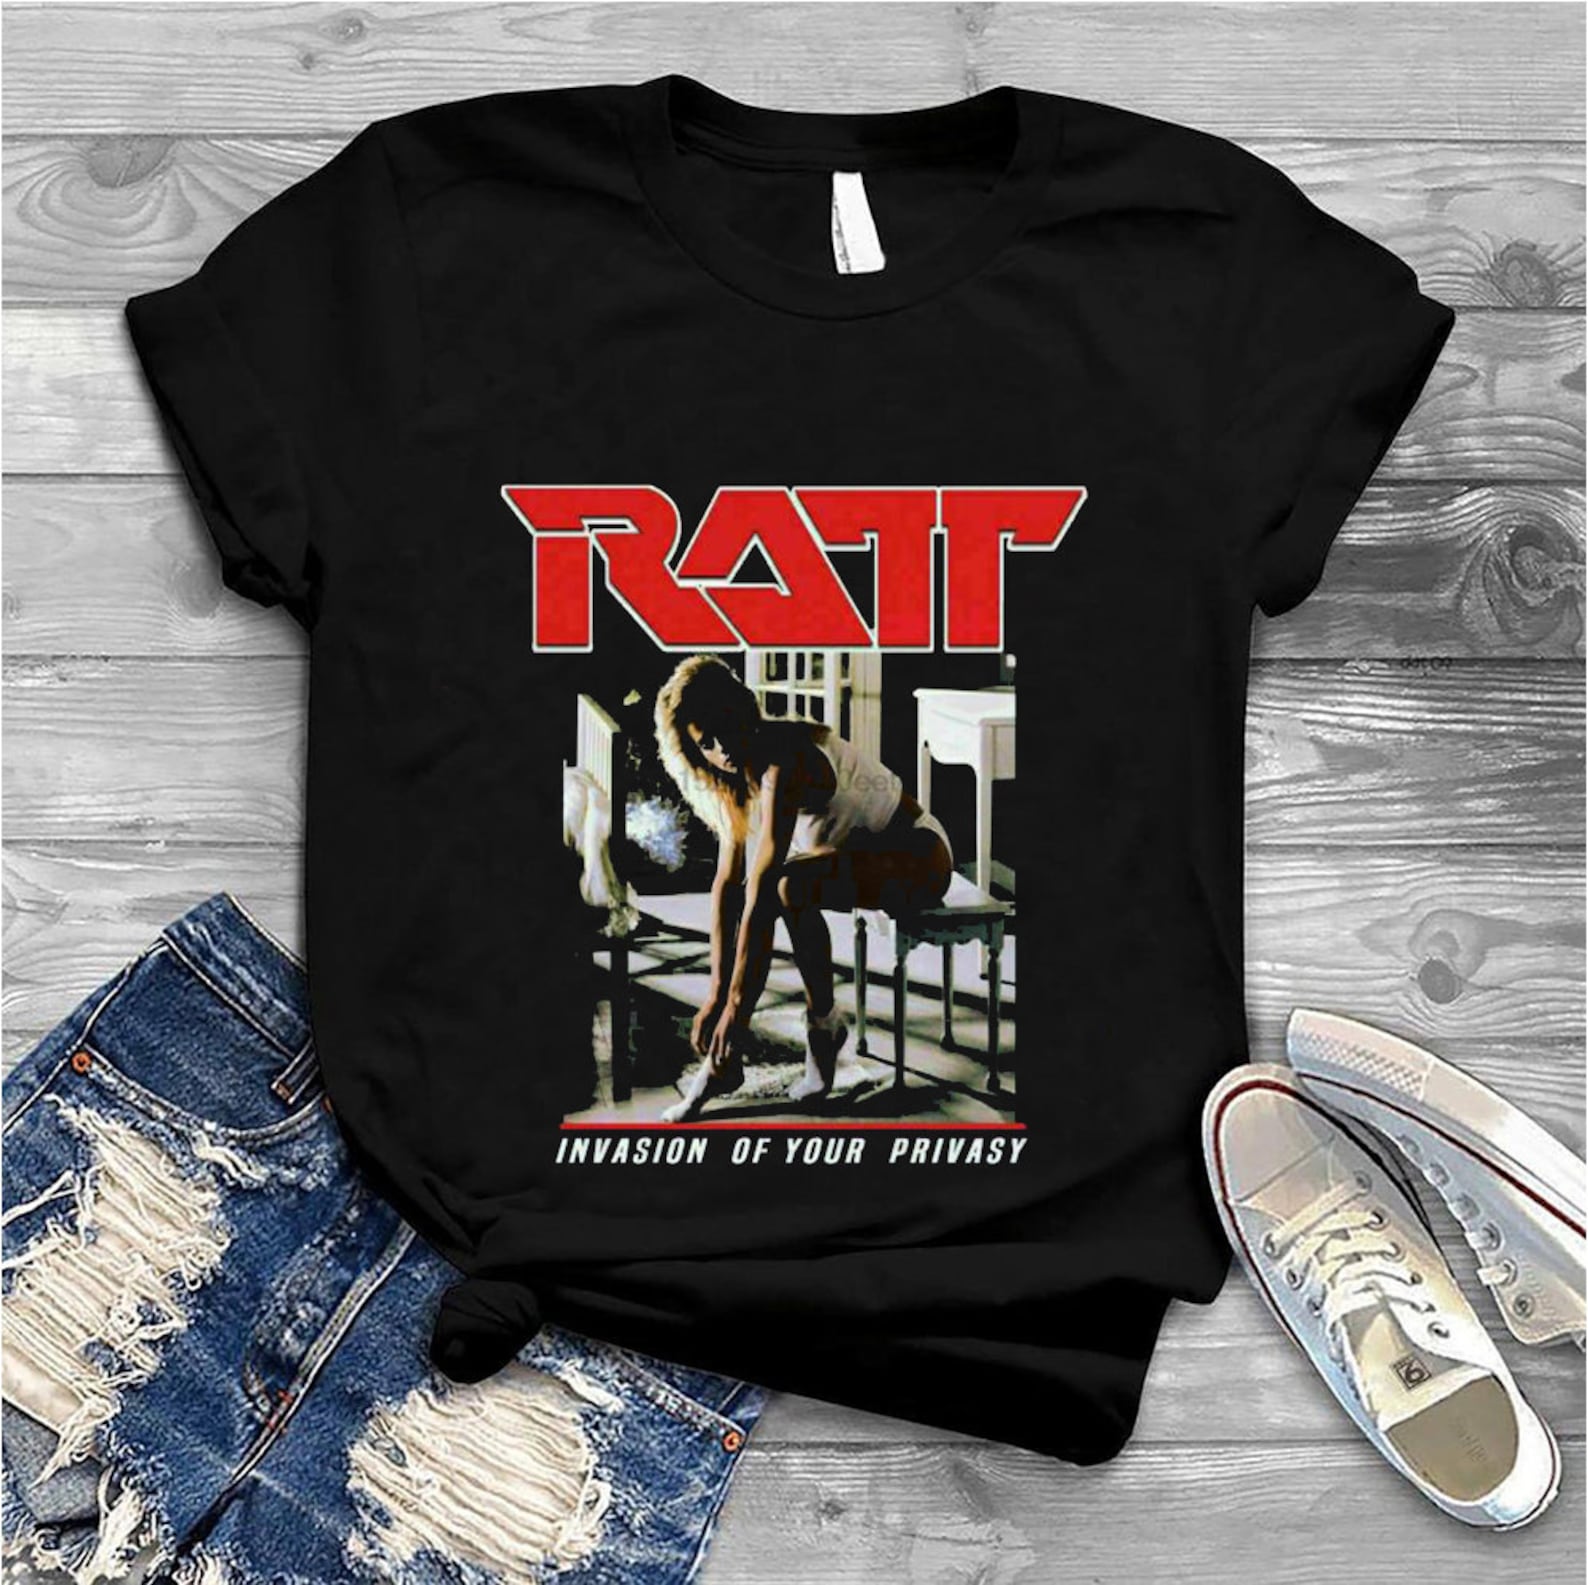 ratt tour merchandise